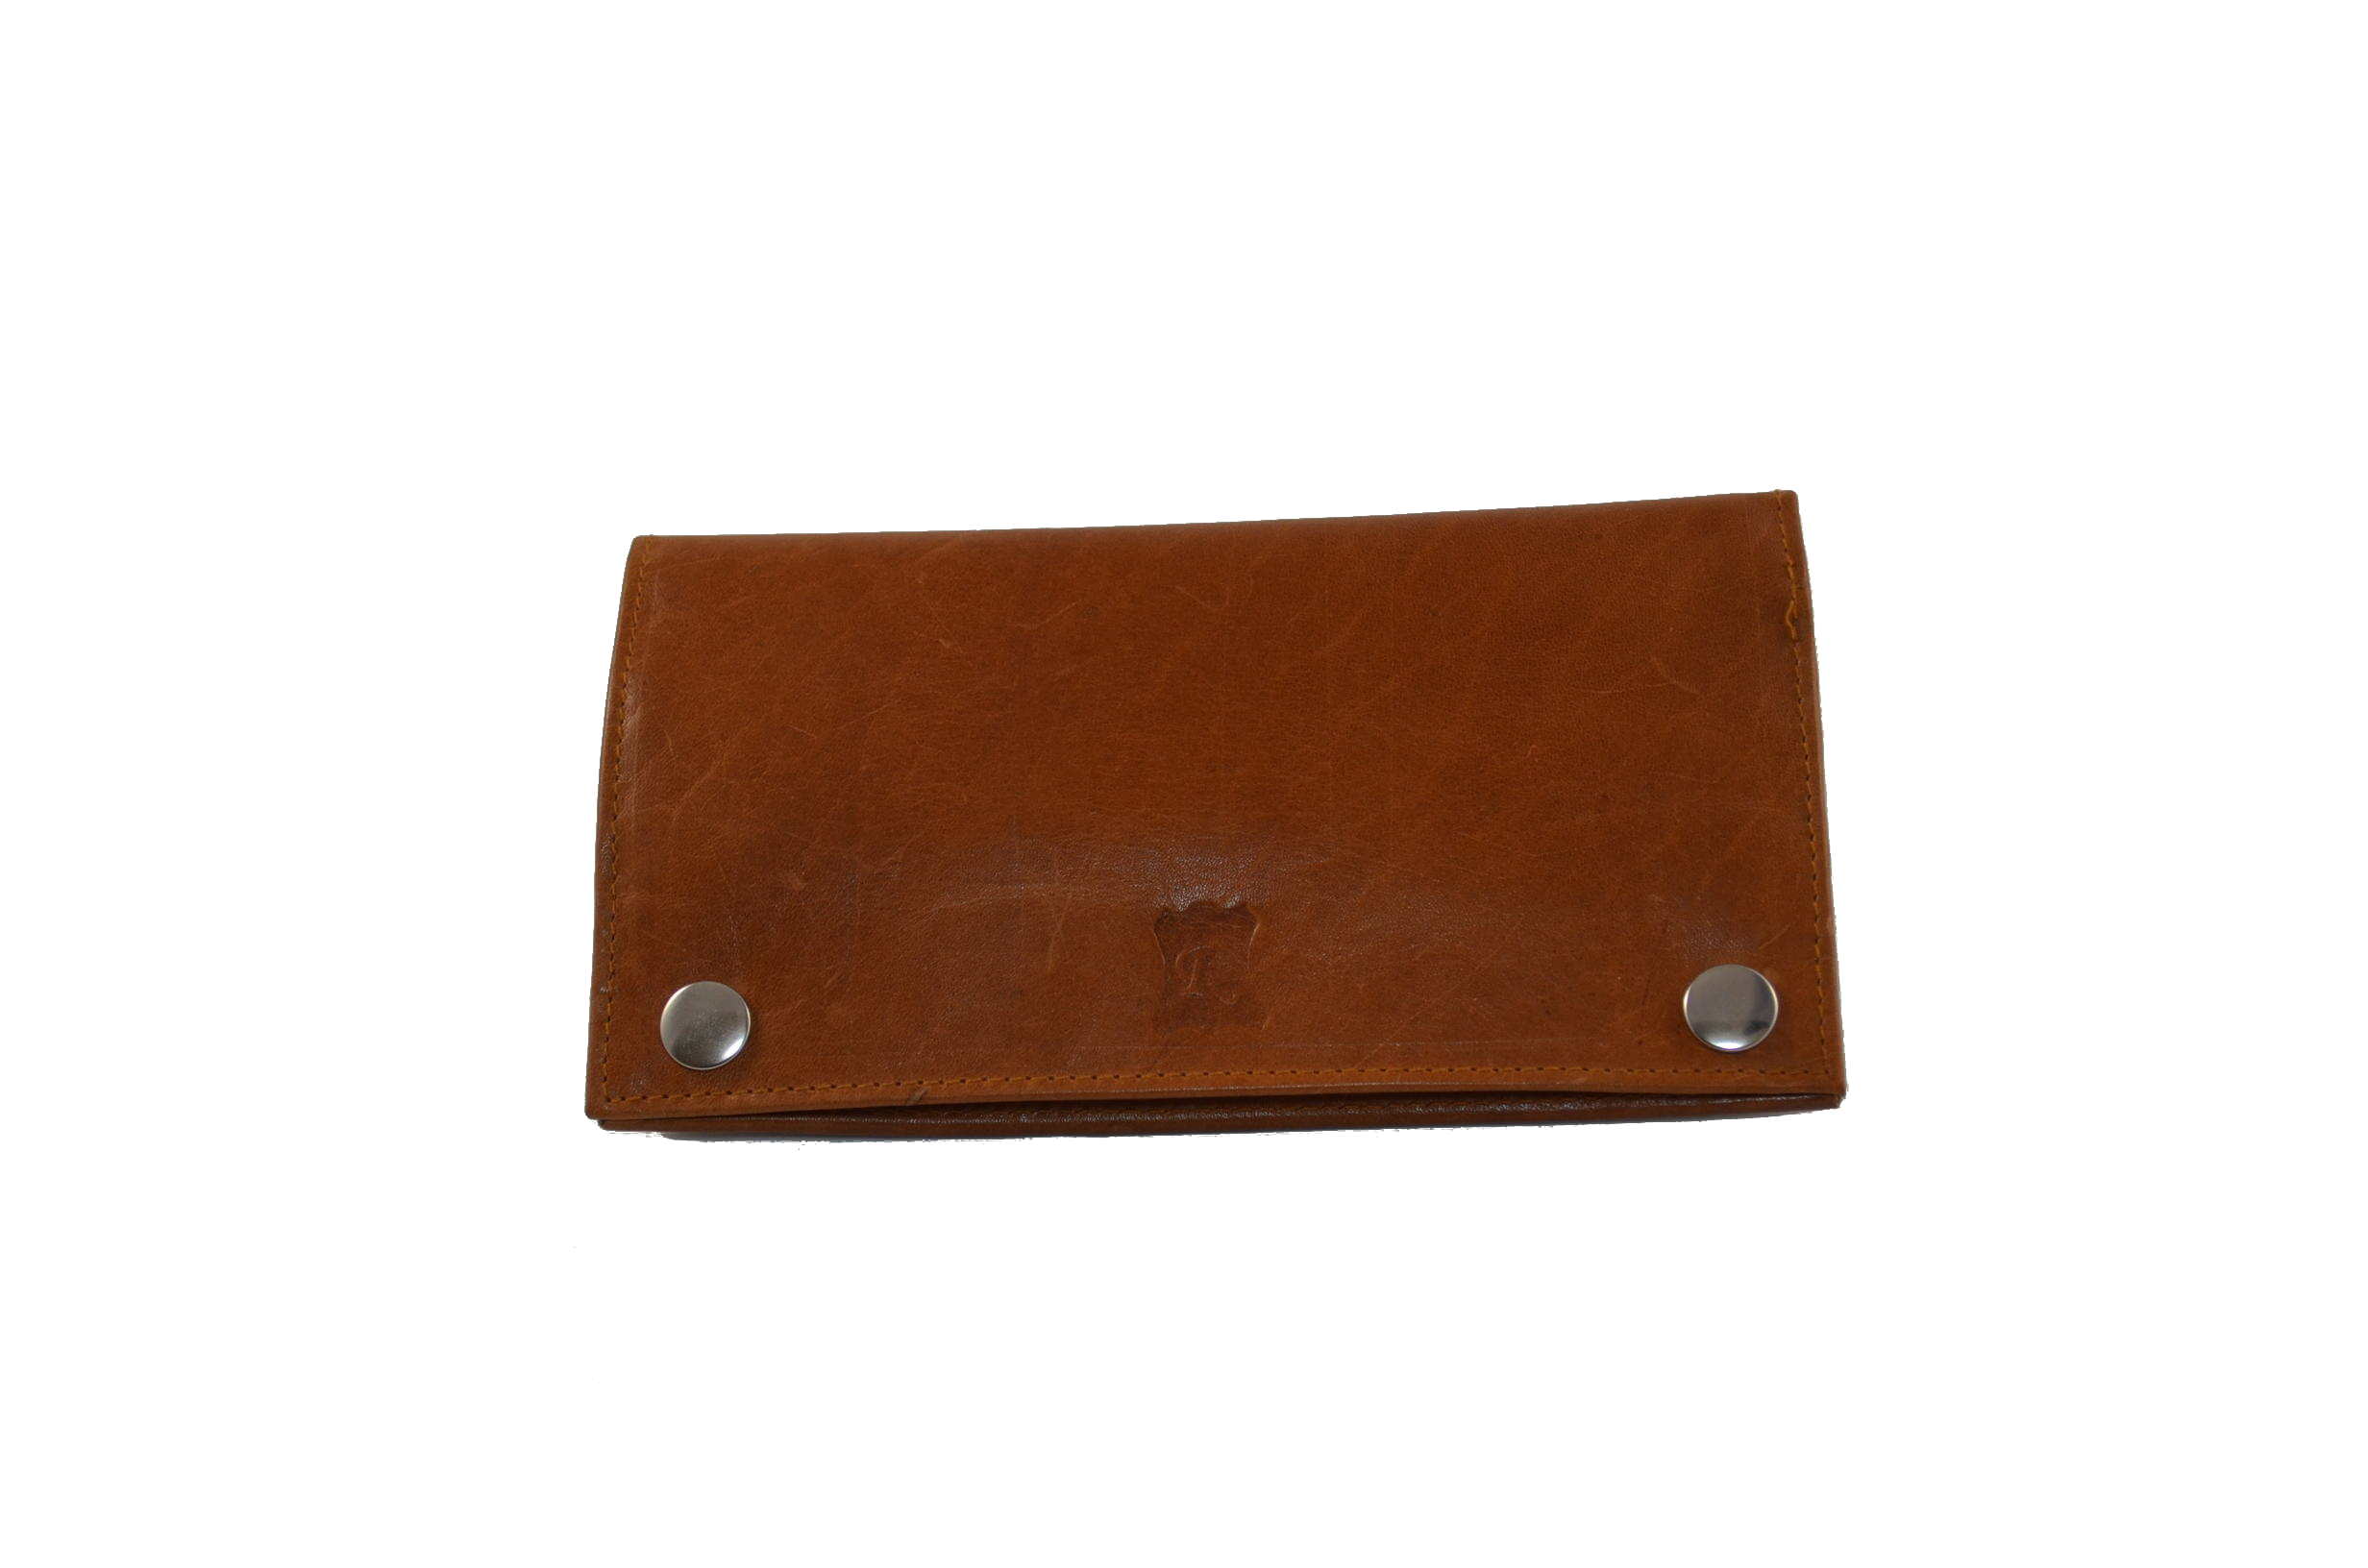 Leather billfold for men or women